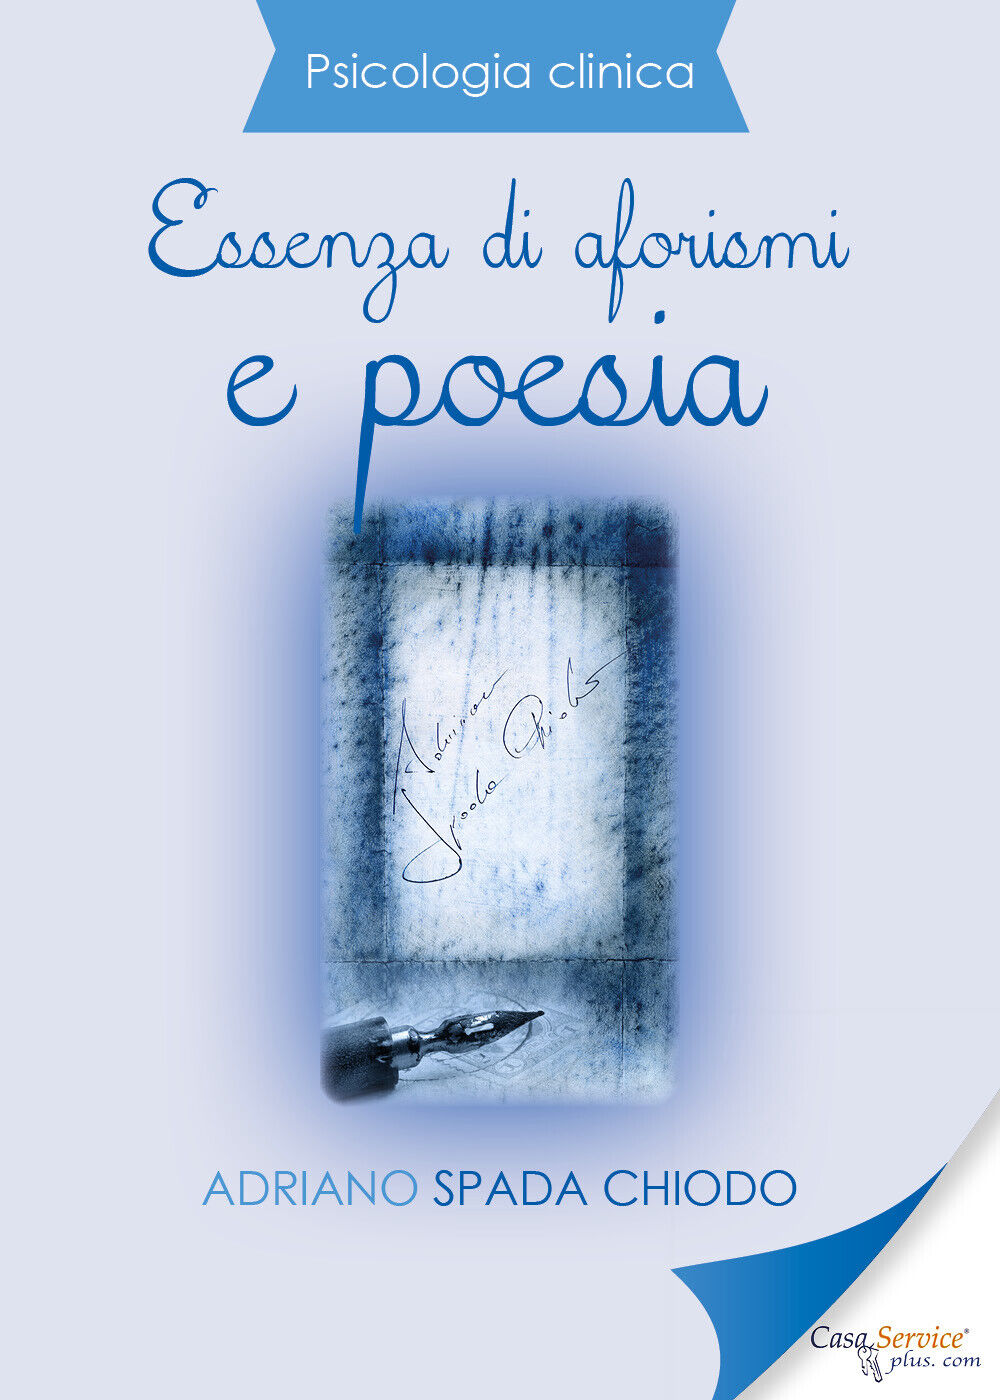 Psicologia Clinica - Essenza di aforismi e poesia di Adriano Spada Chiodo,  2019